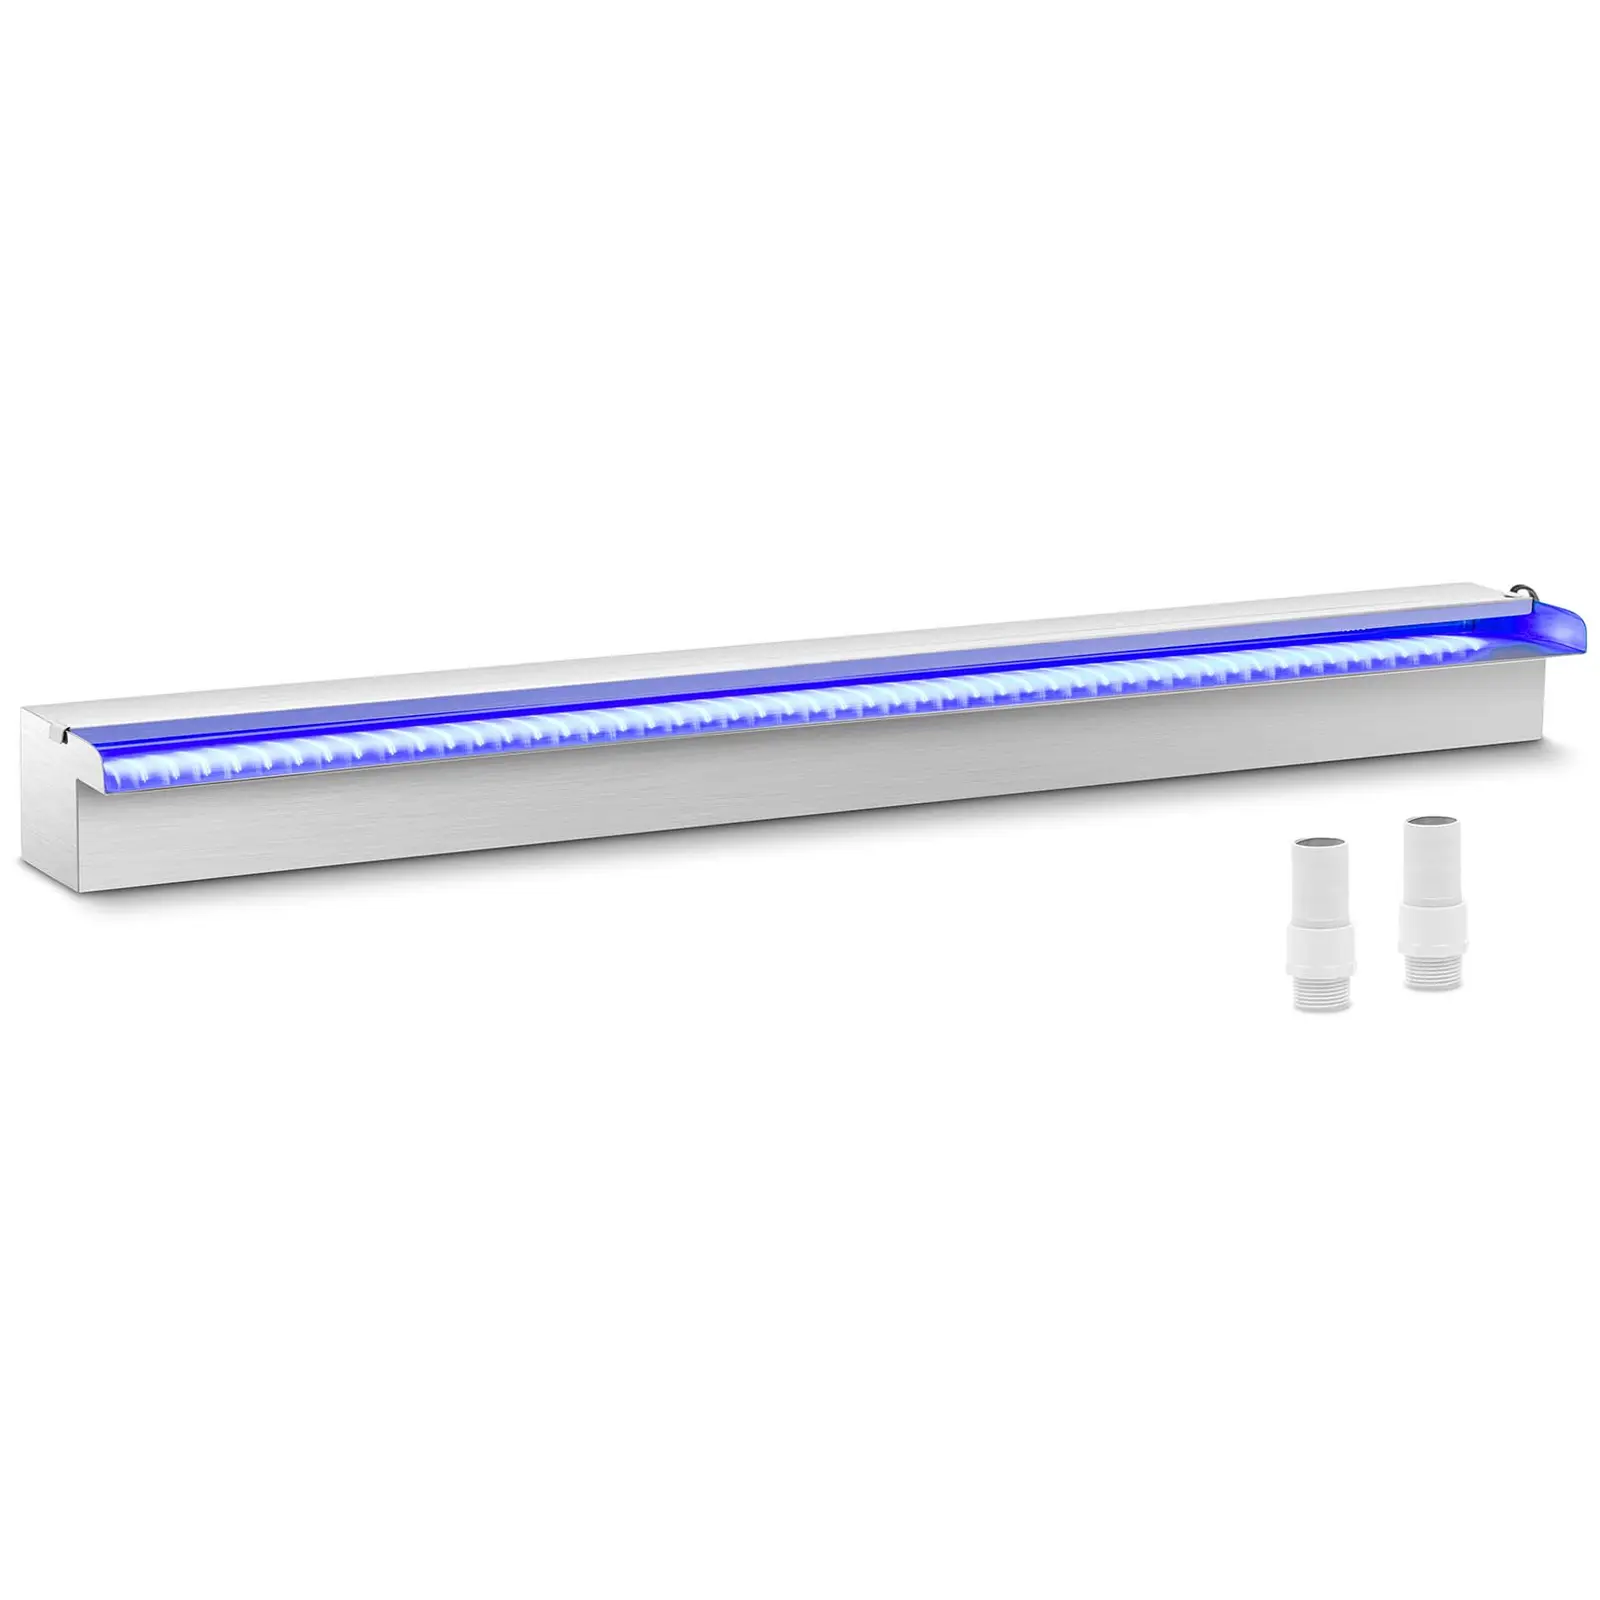 Fontaine de piscine - 90 cm - Éclairage LED - Bleu / Blanc - Rebord ouvert